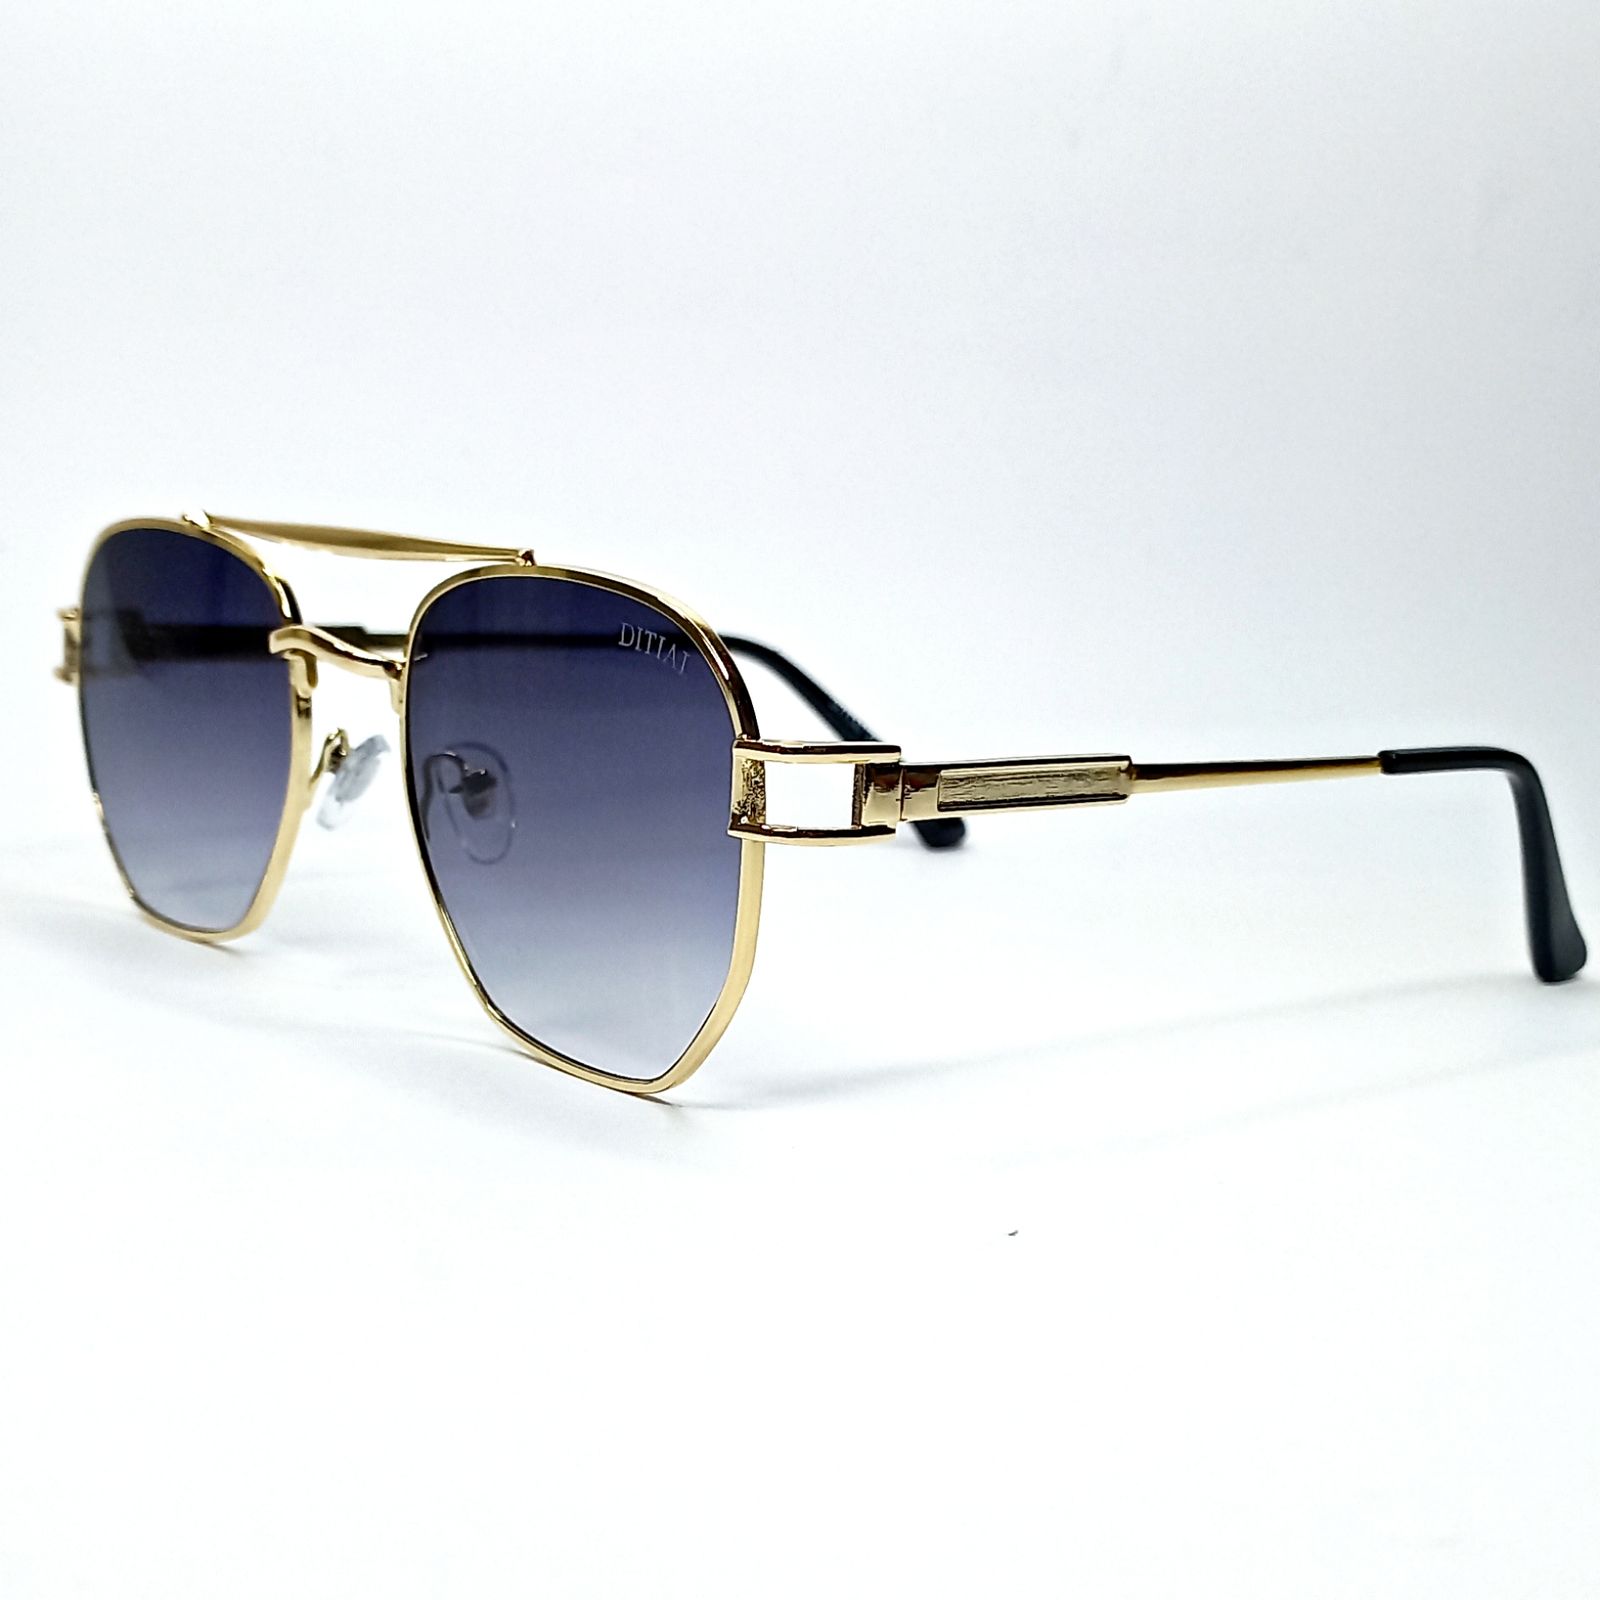 عینک آفتابی دیتیای مدل Gxd8 -  - 2